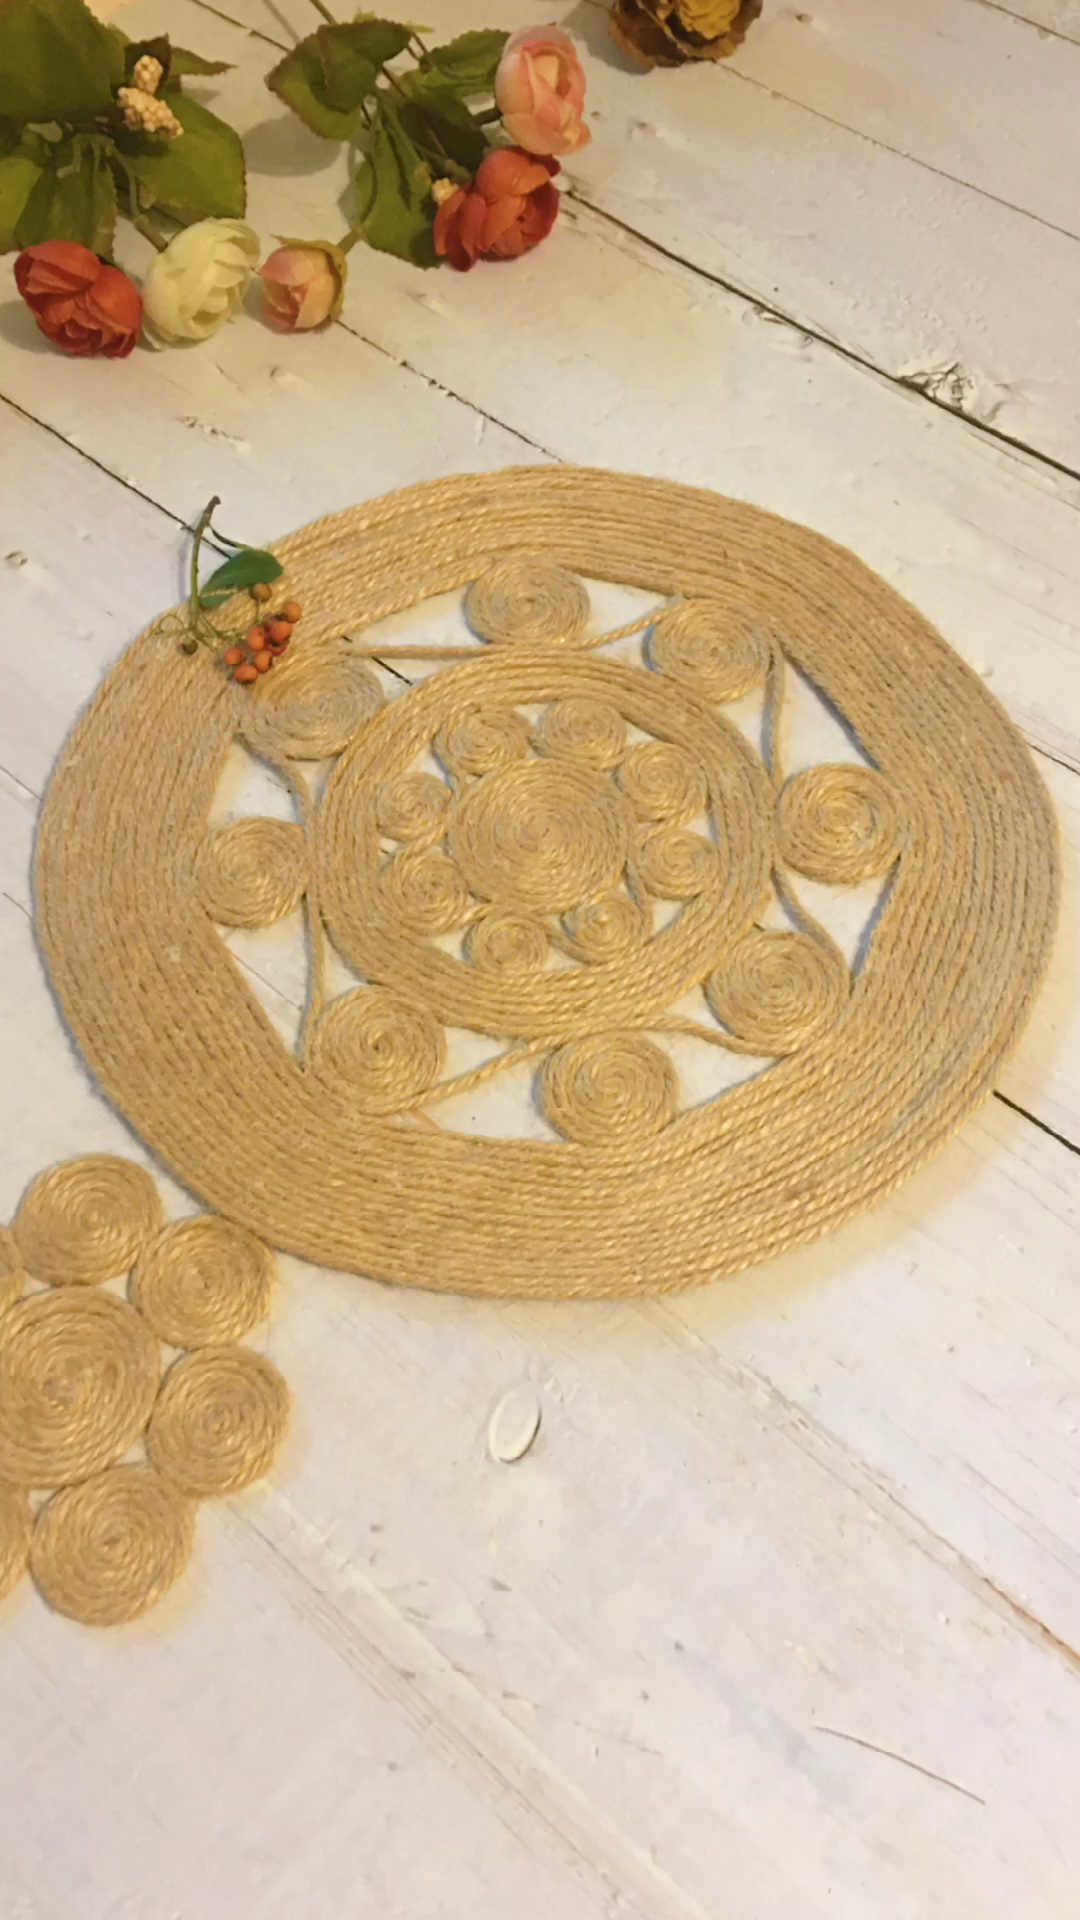 创意手工diy手工编织用麻绳制作各种垫子花瓶垫锅垫水杯垫